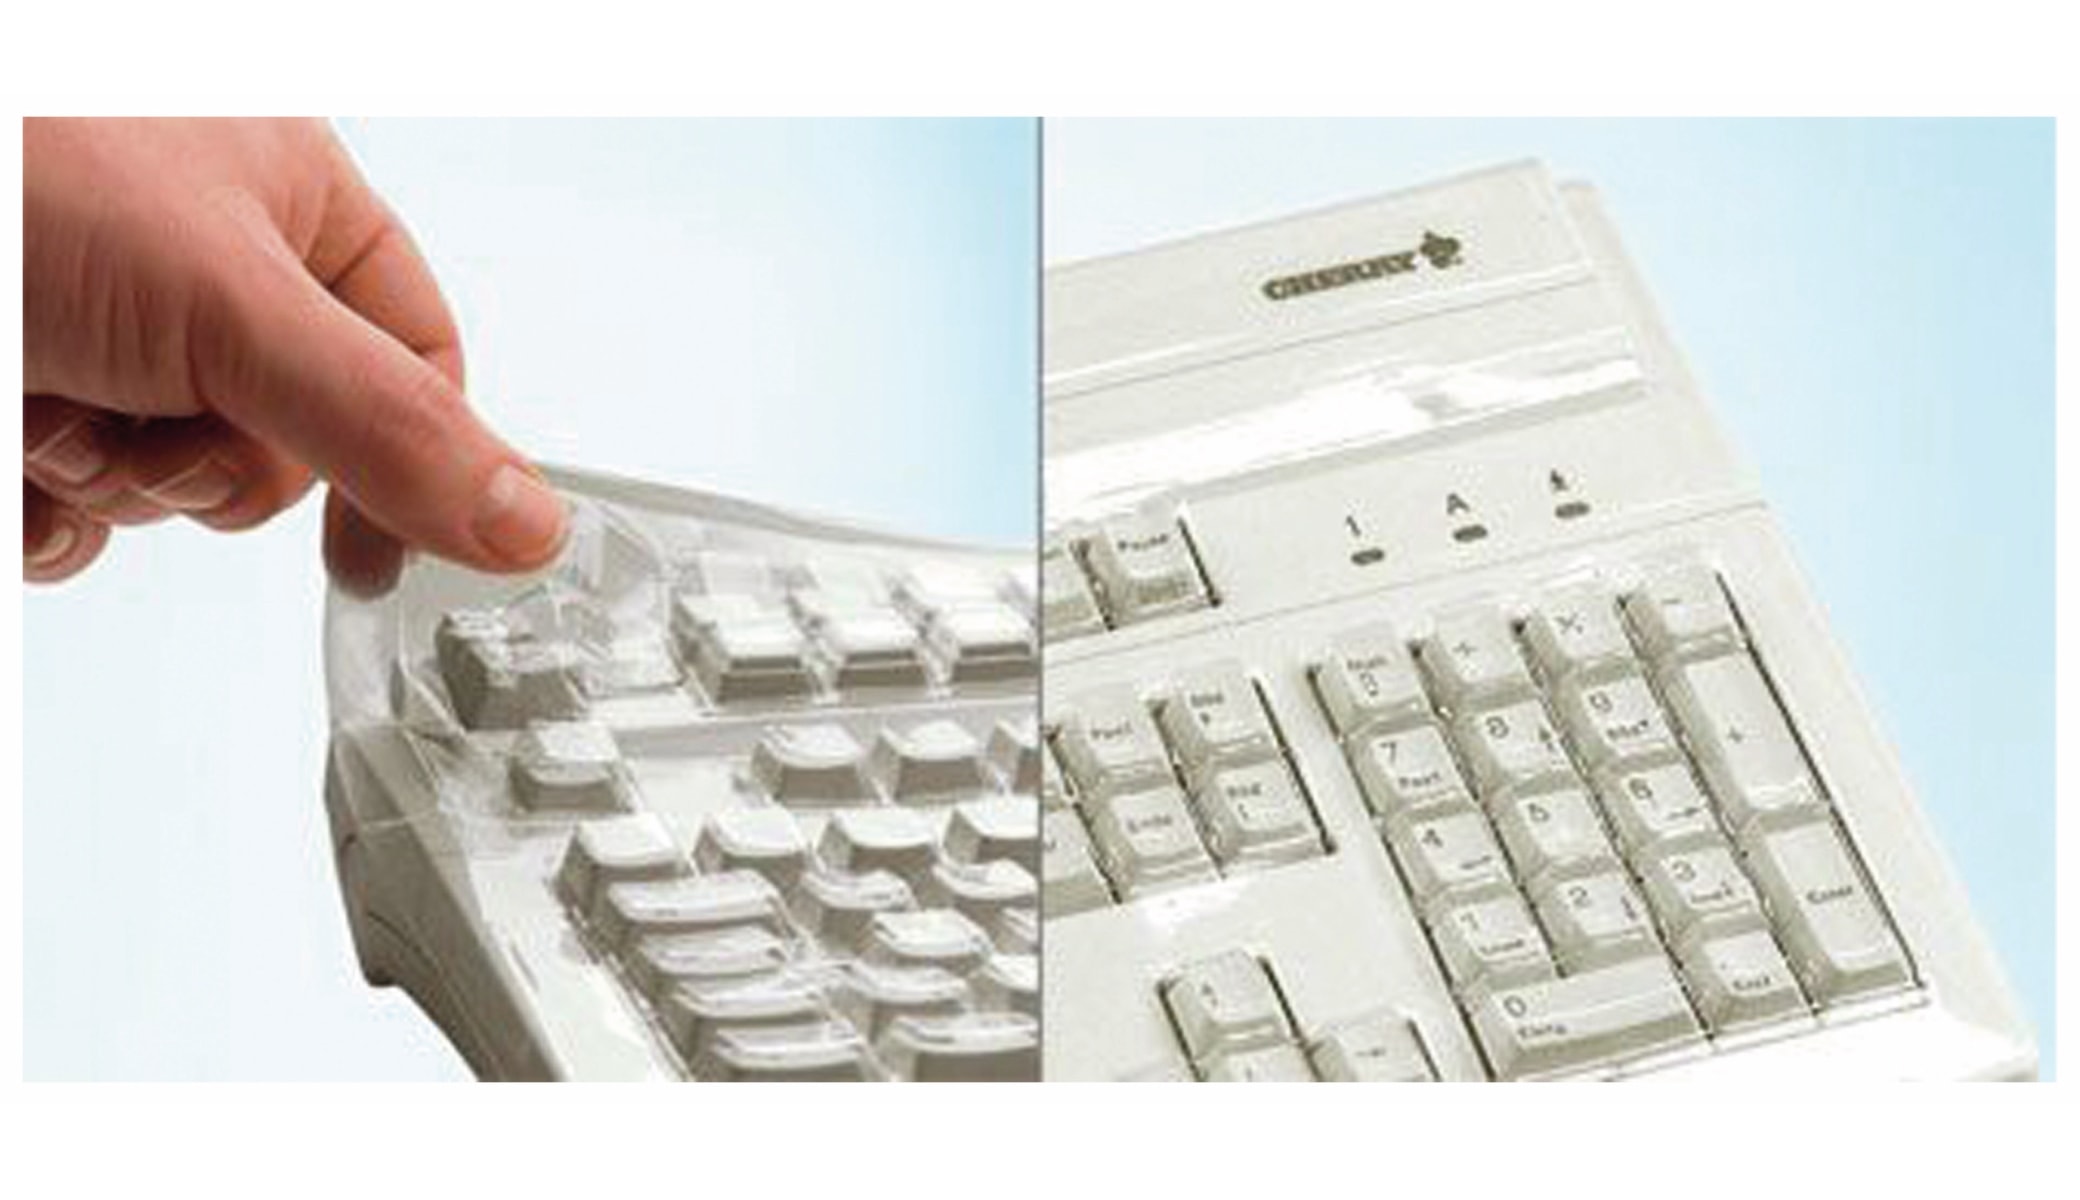 CHERRY Tastatur-Schutzfolie WetEx, für Modell KC 1000 SC